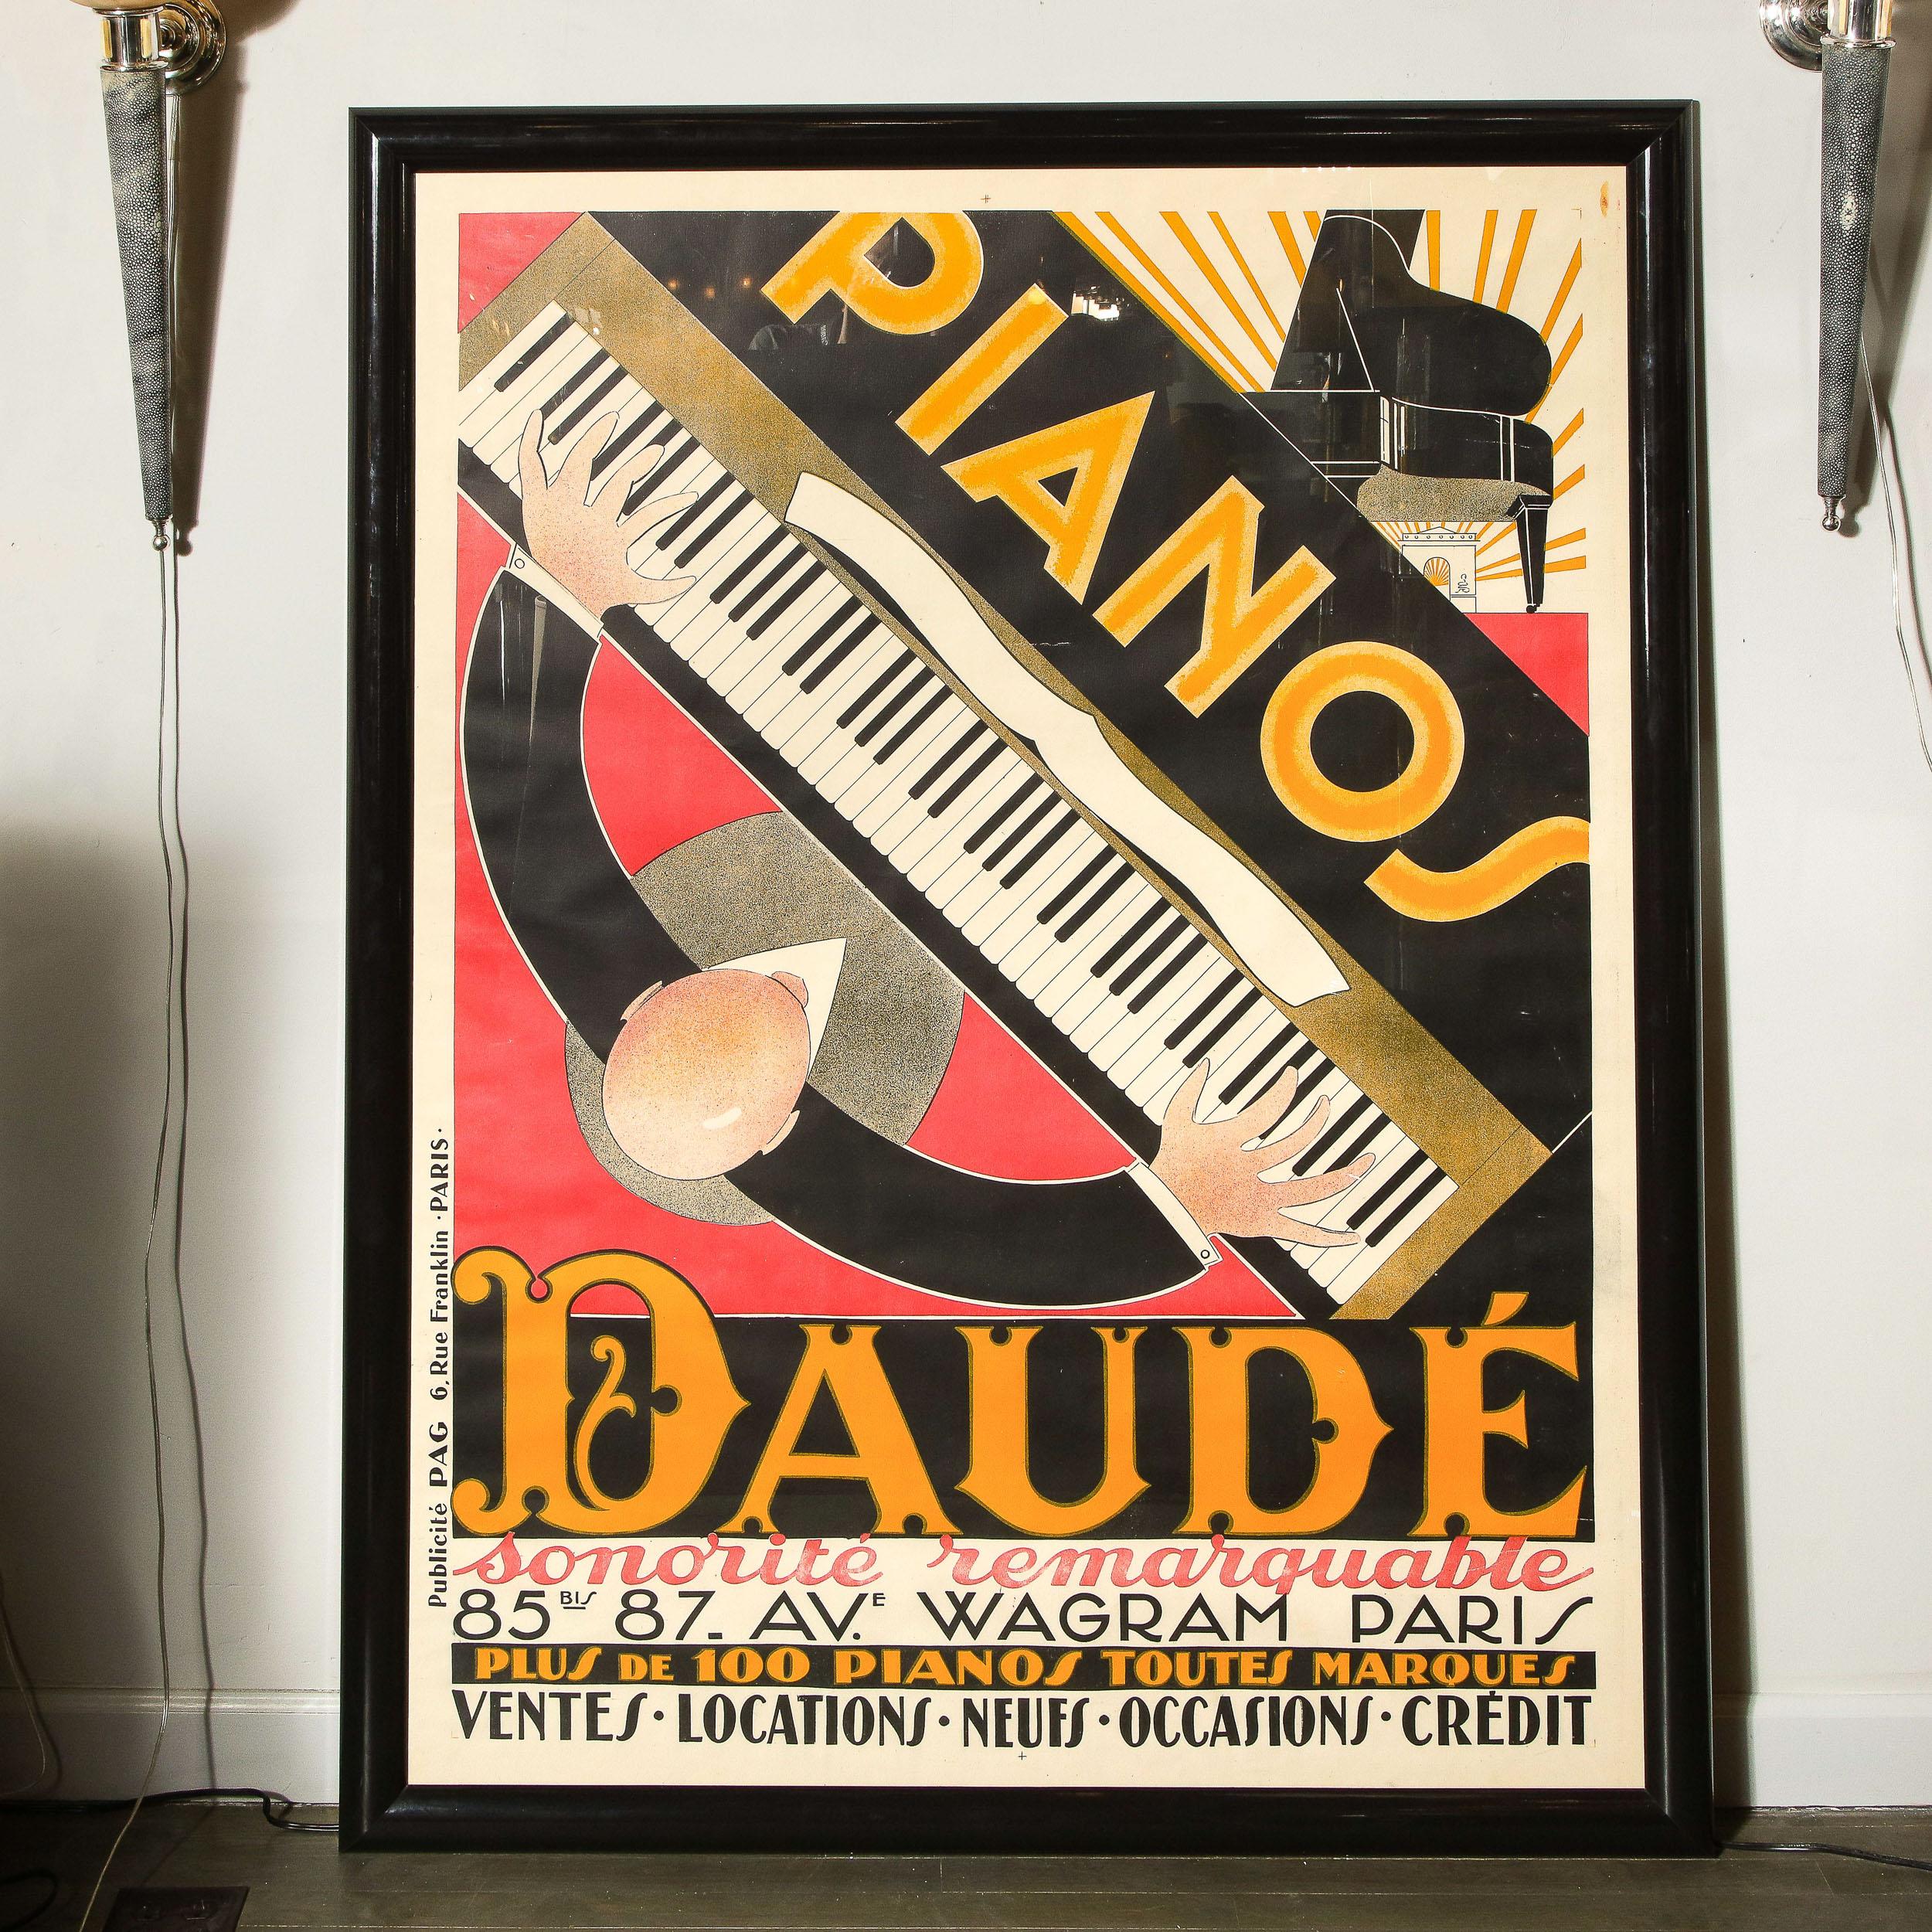 Piano's Daude - Print by Andre Daude